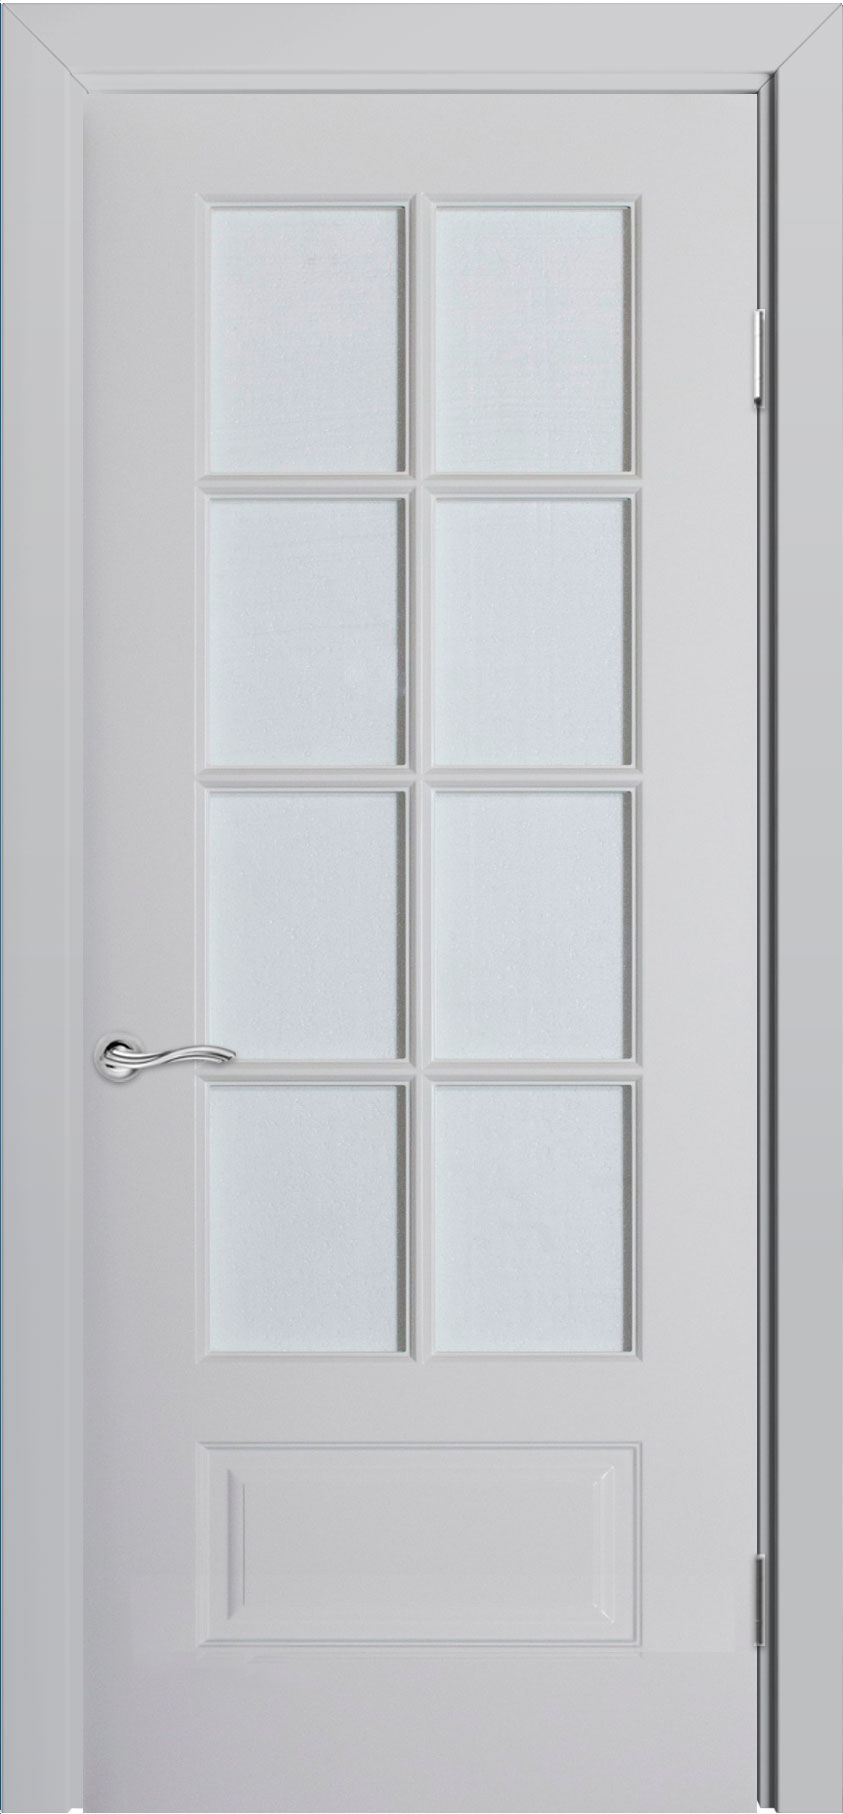 межкомнатные двери  Прованс Мадрид с фрезерованной решёткой ДО8 эмаль